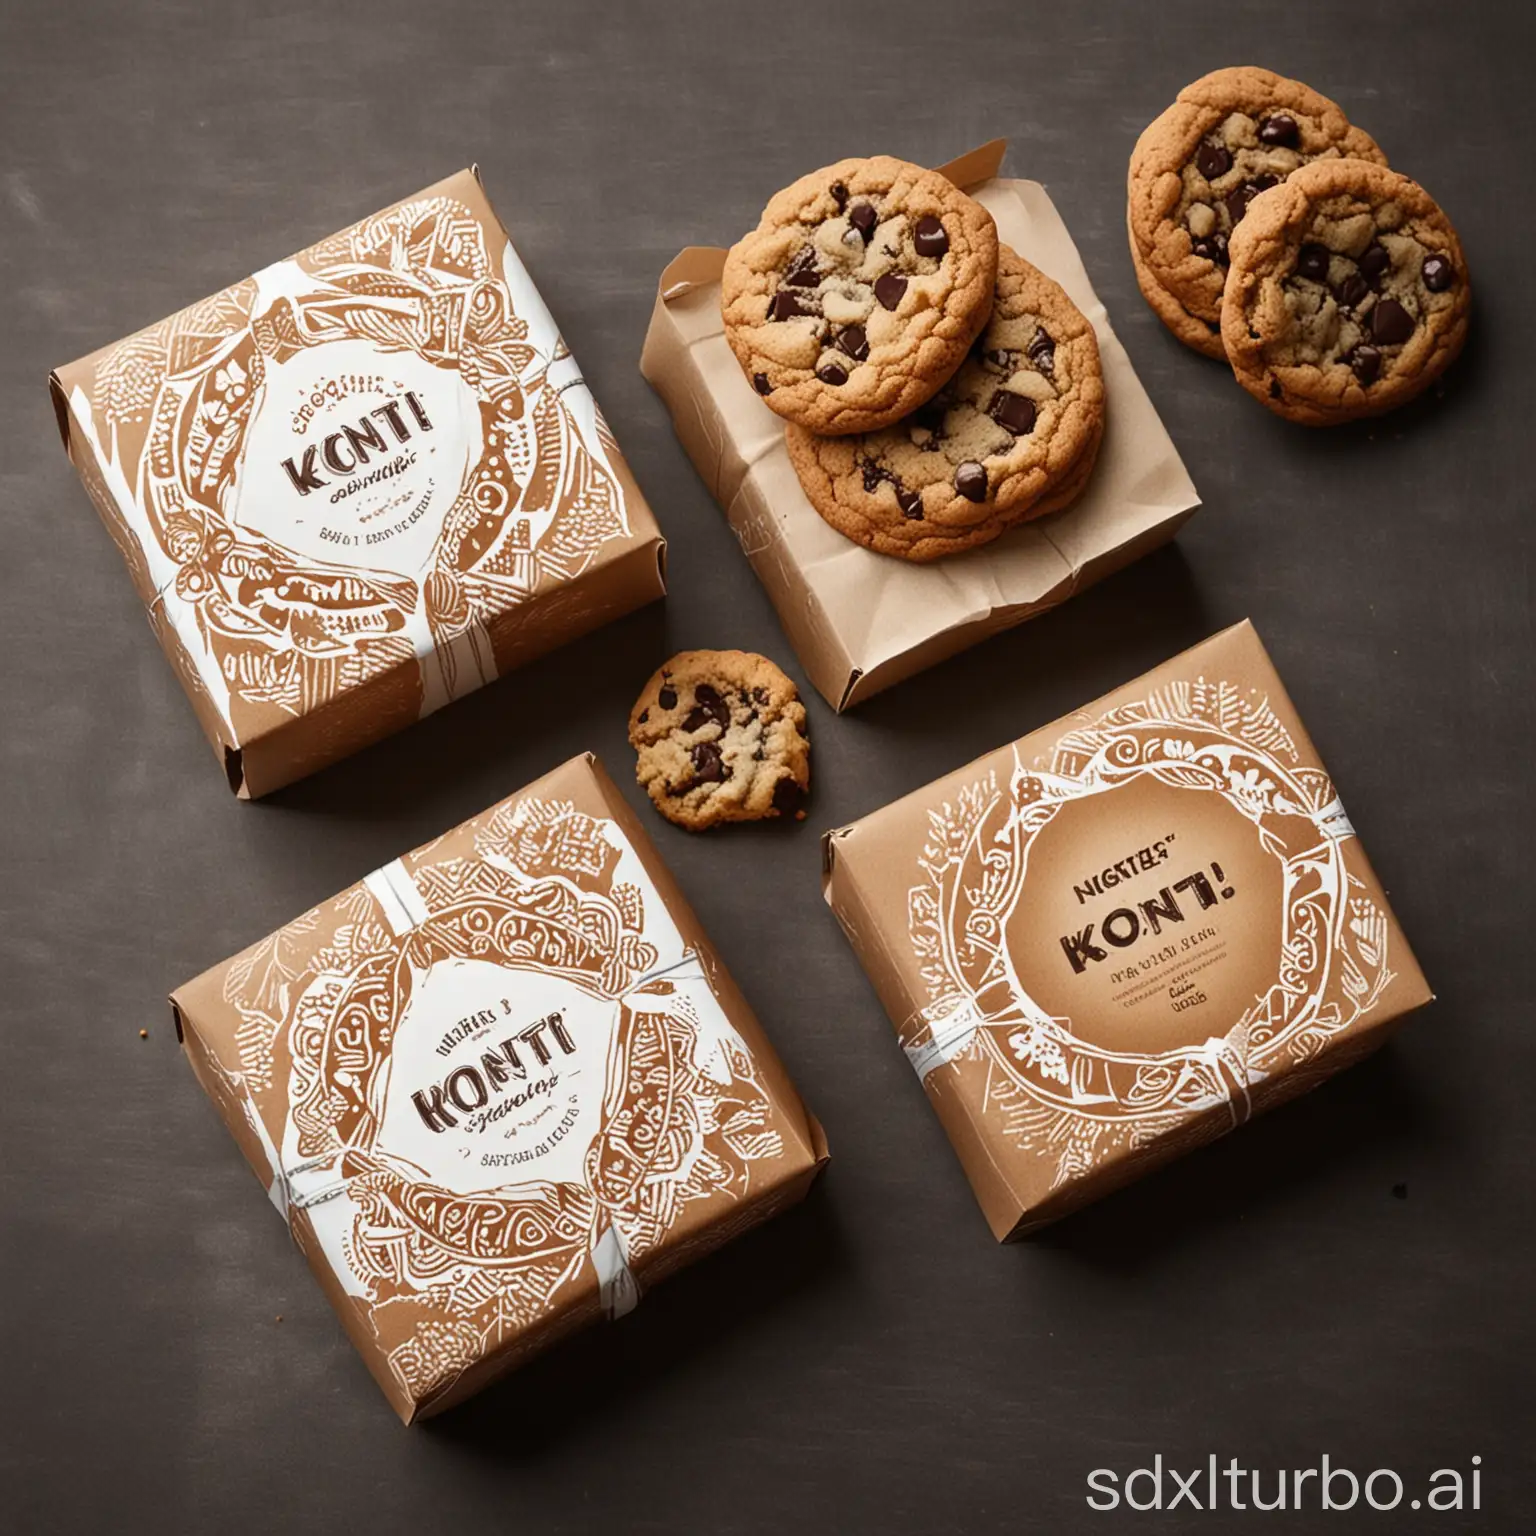 Konti cookie packaging